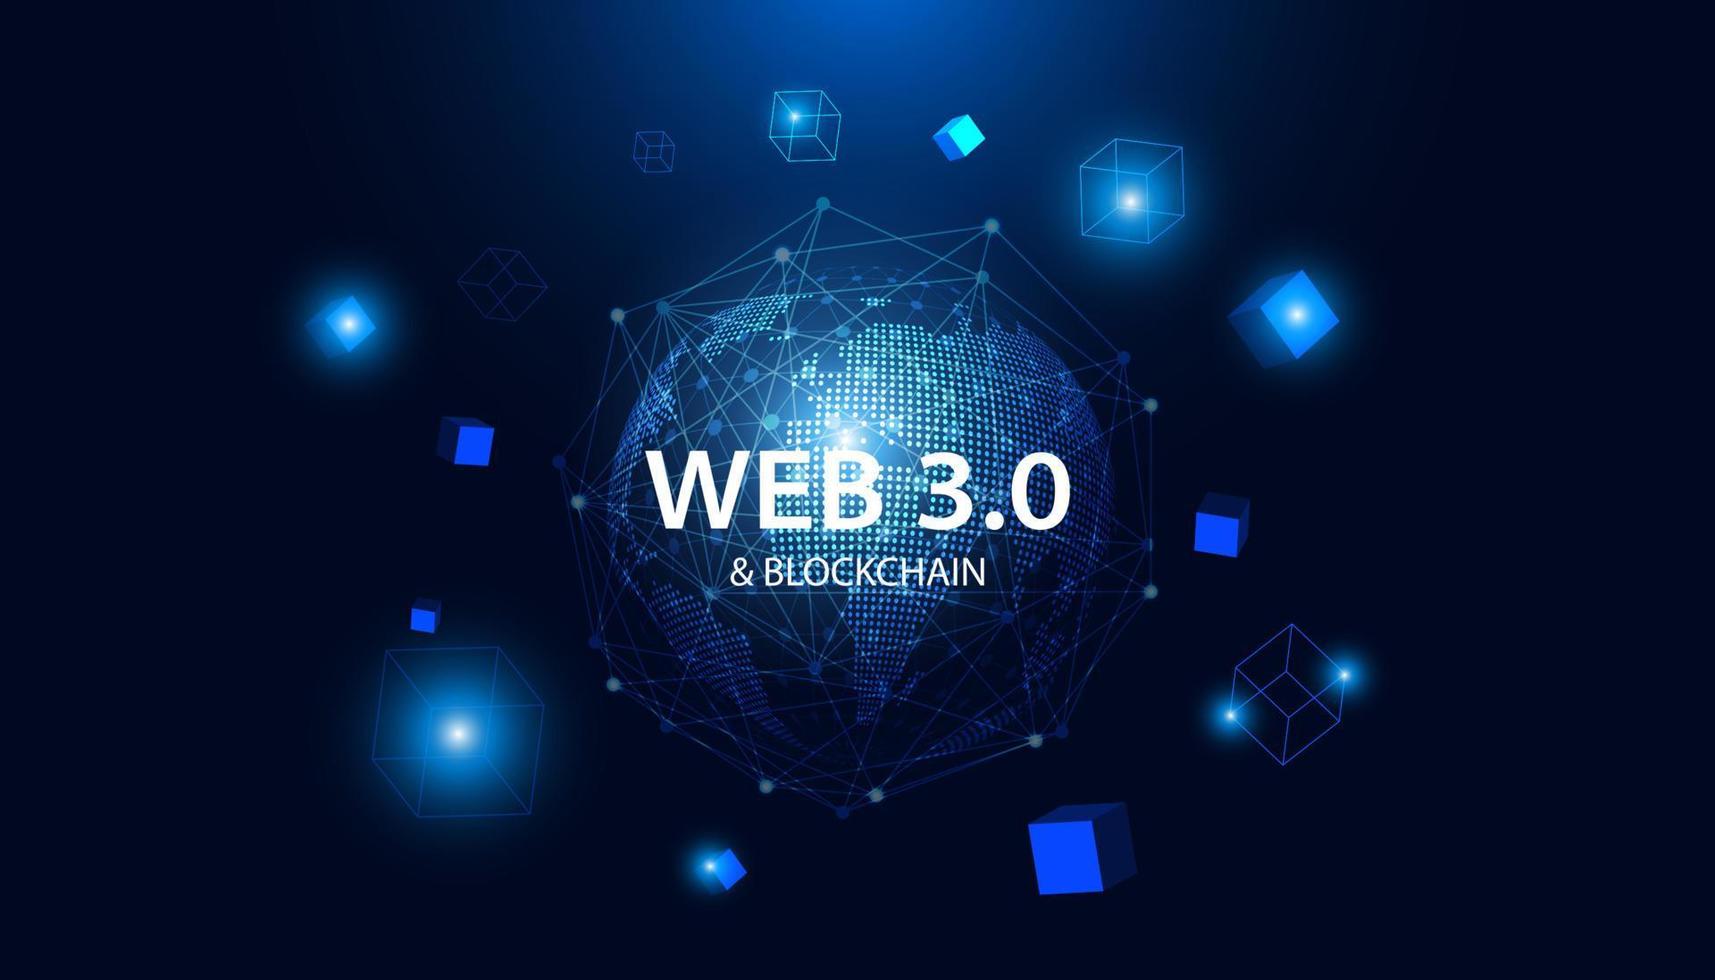 tecnologia mundo abstrato pontos azuis conceito moderno da web 3.0 é acesso livre a informações ou serviços sem intermediários para controlar e censurar e blockchain em segundo plano. vetor